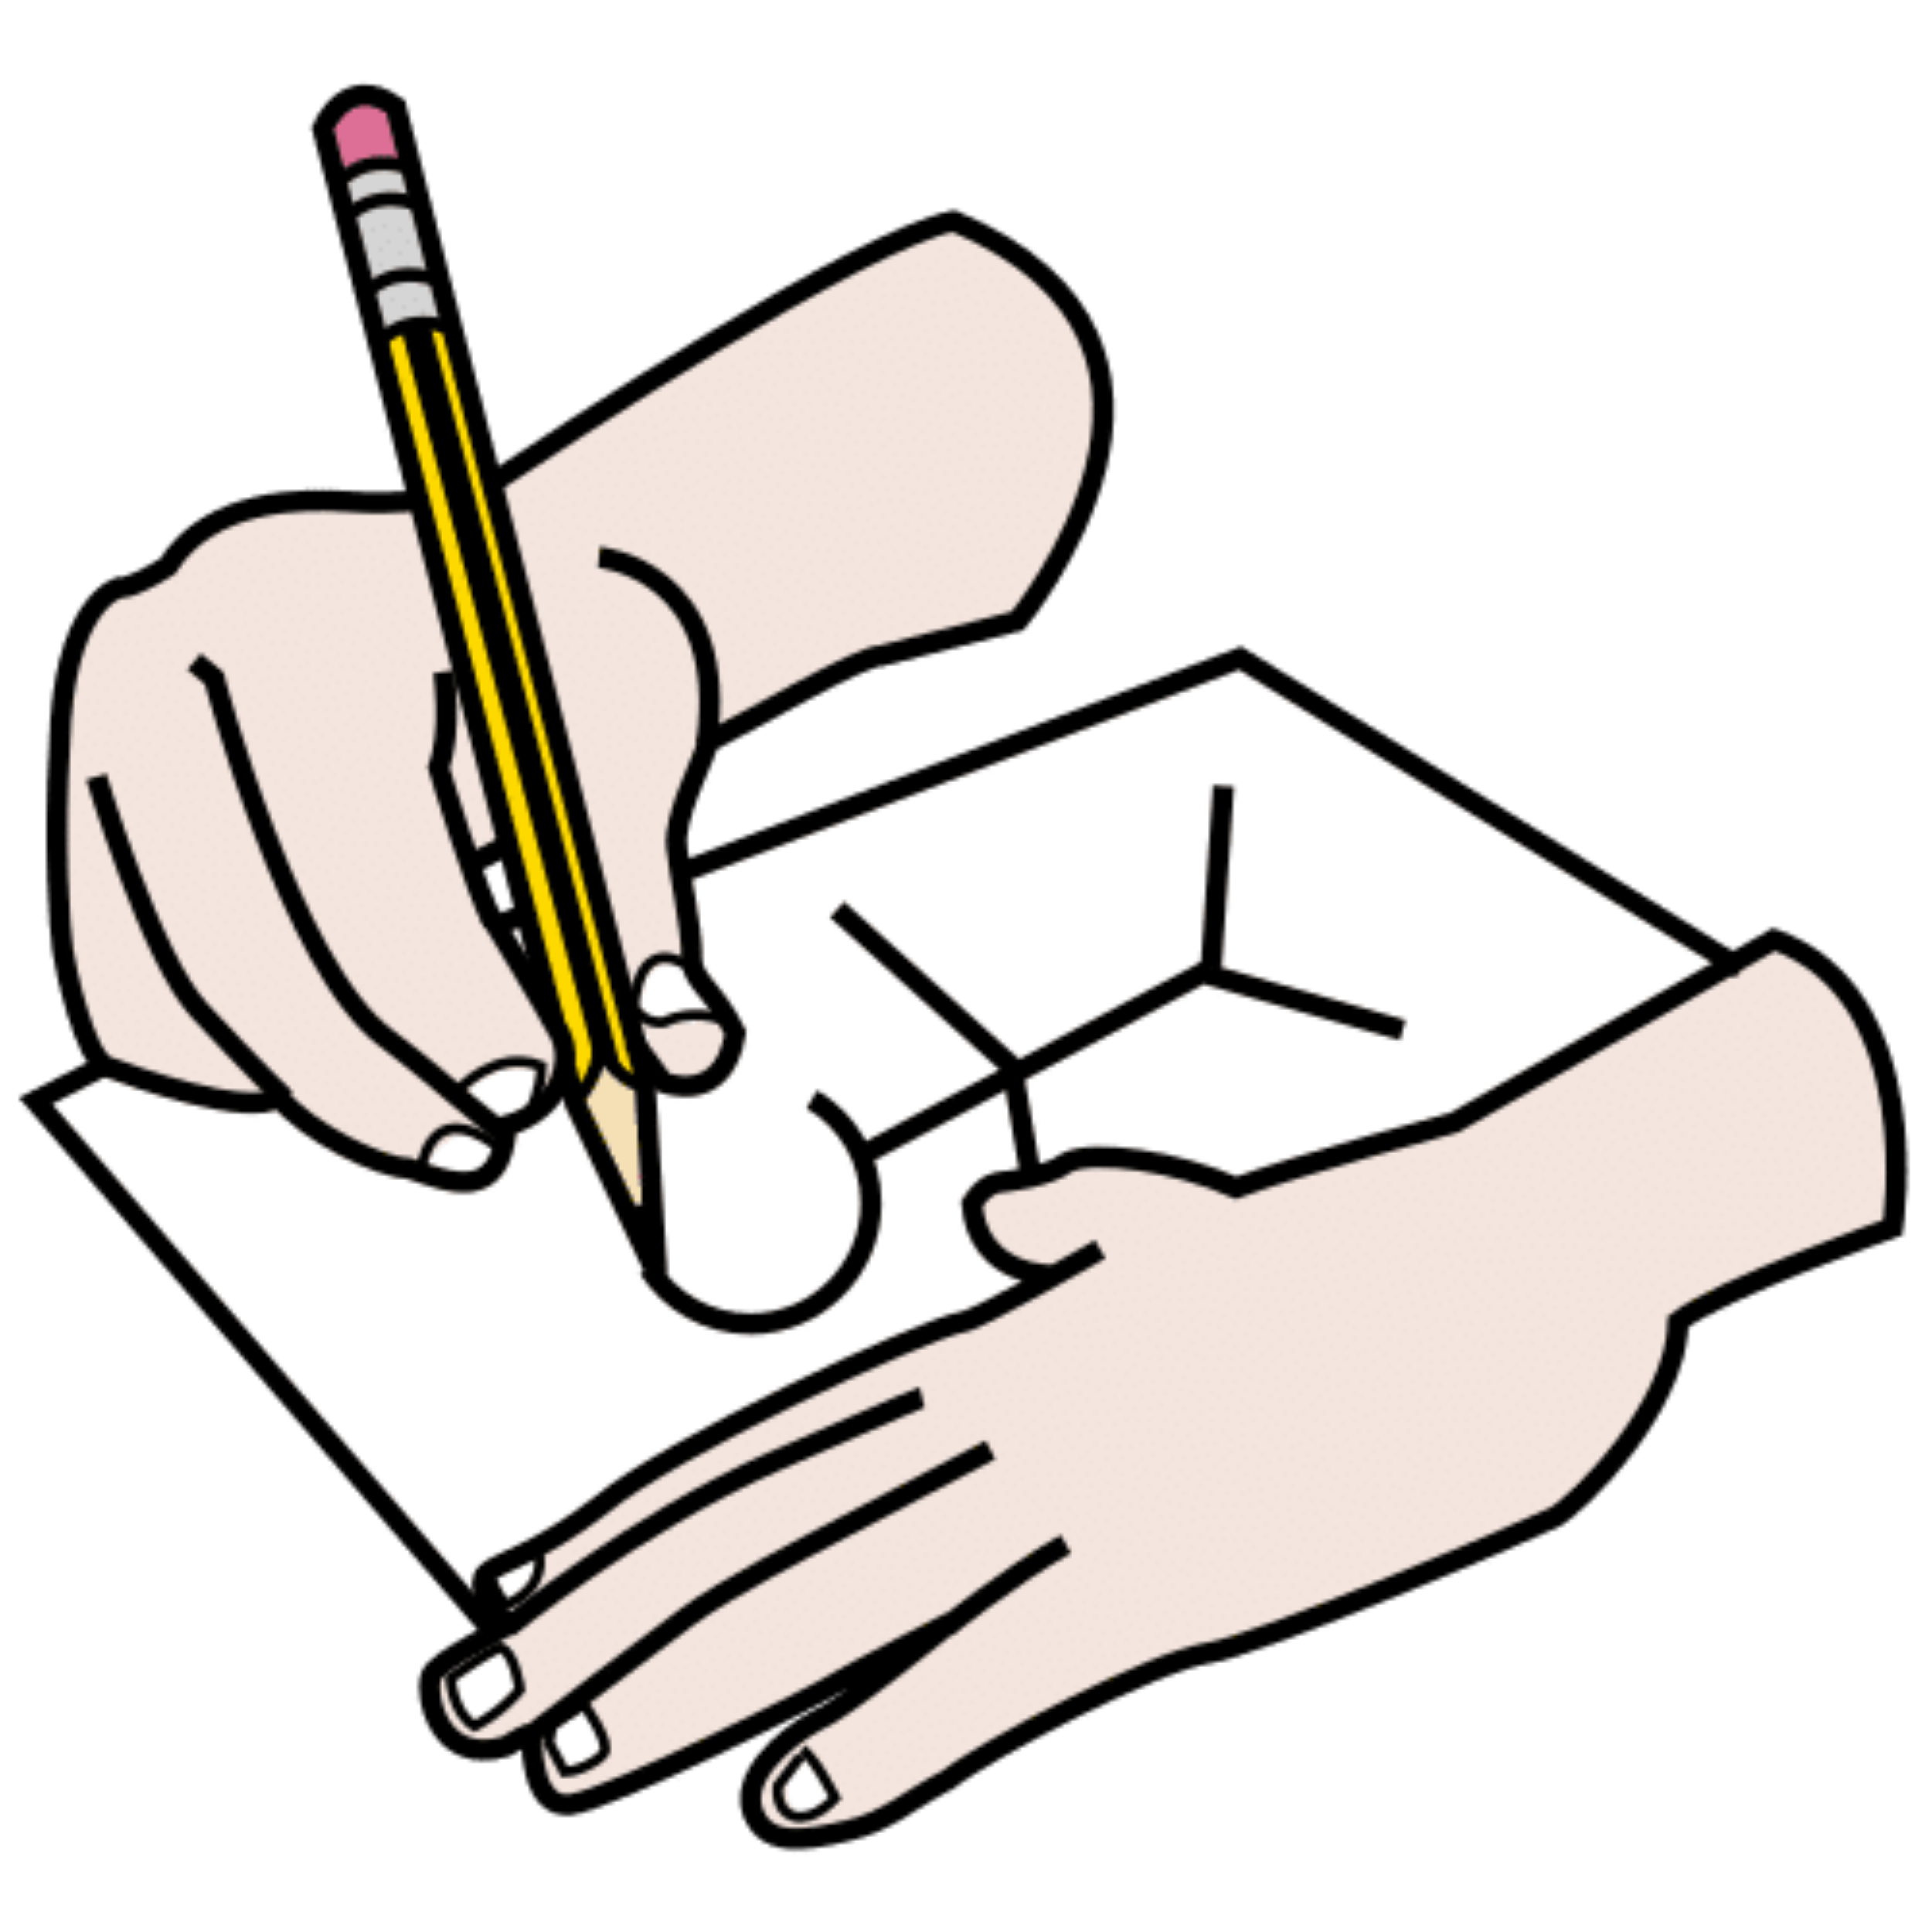 La imagen muestra un par de manos sujetando un lápiz y realizando un dibujo de un muñeco.